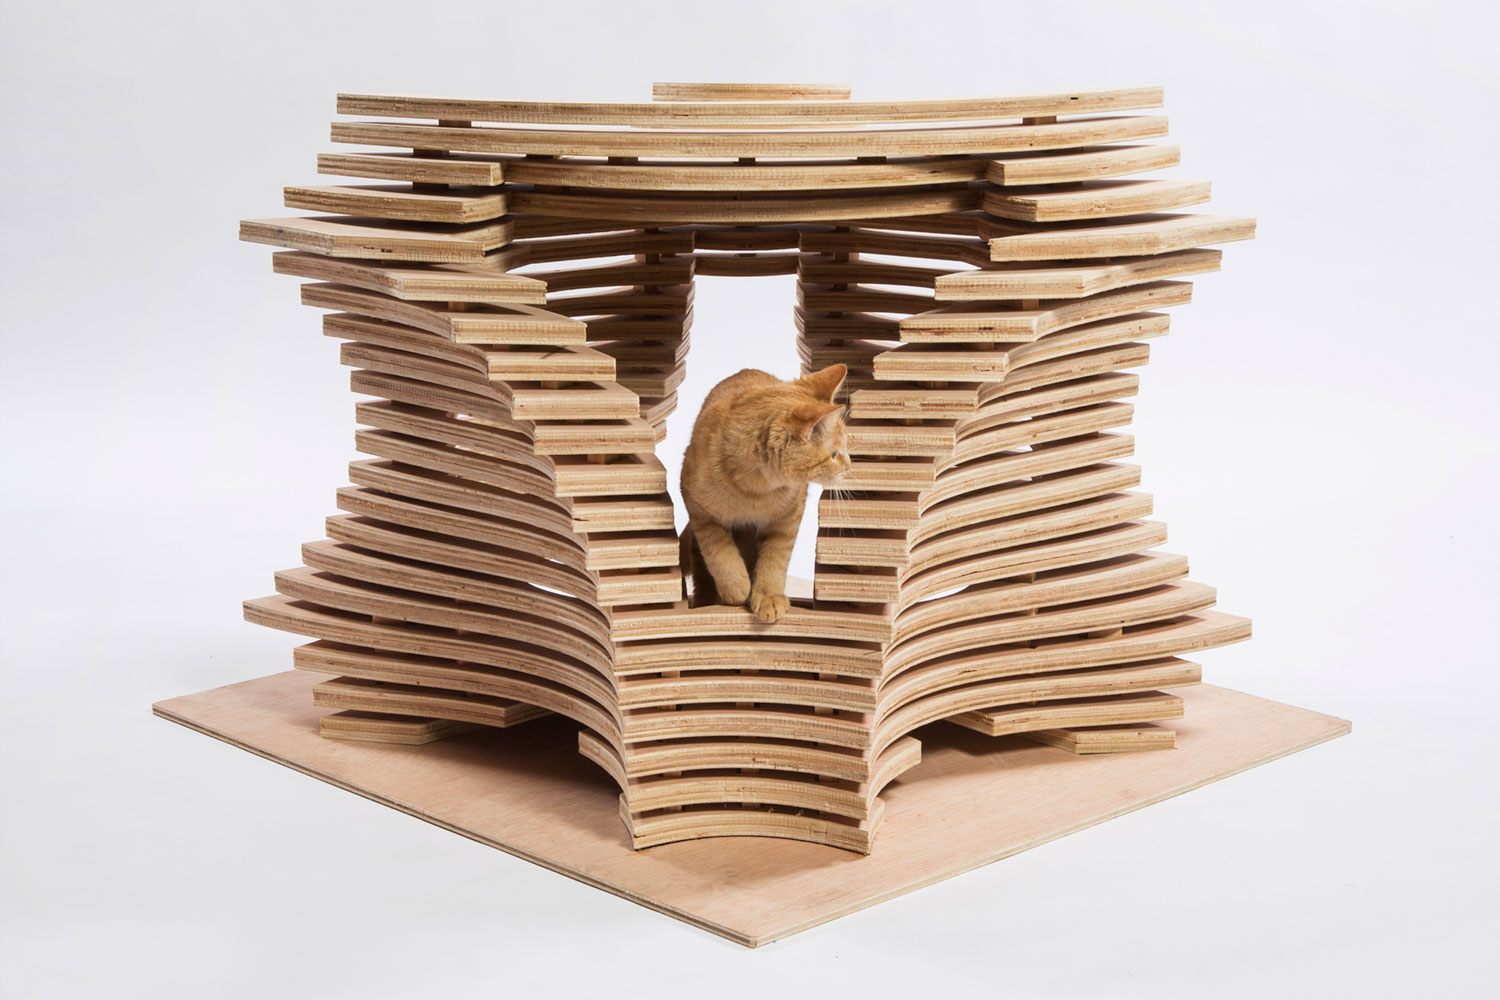 architects for animals design amazing cat houses callisonrtkl photo credit meghan bob photography